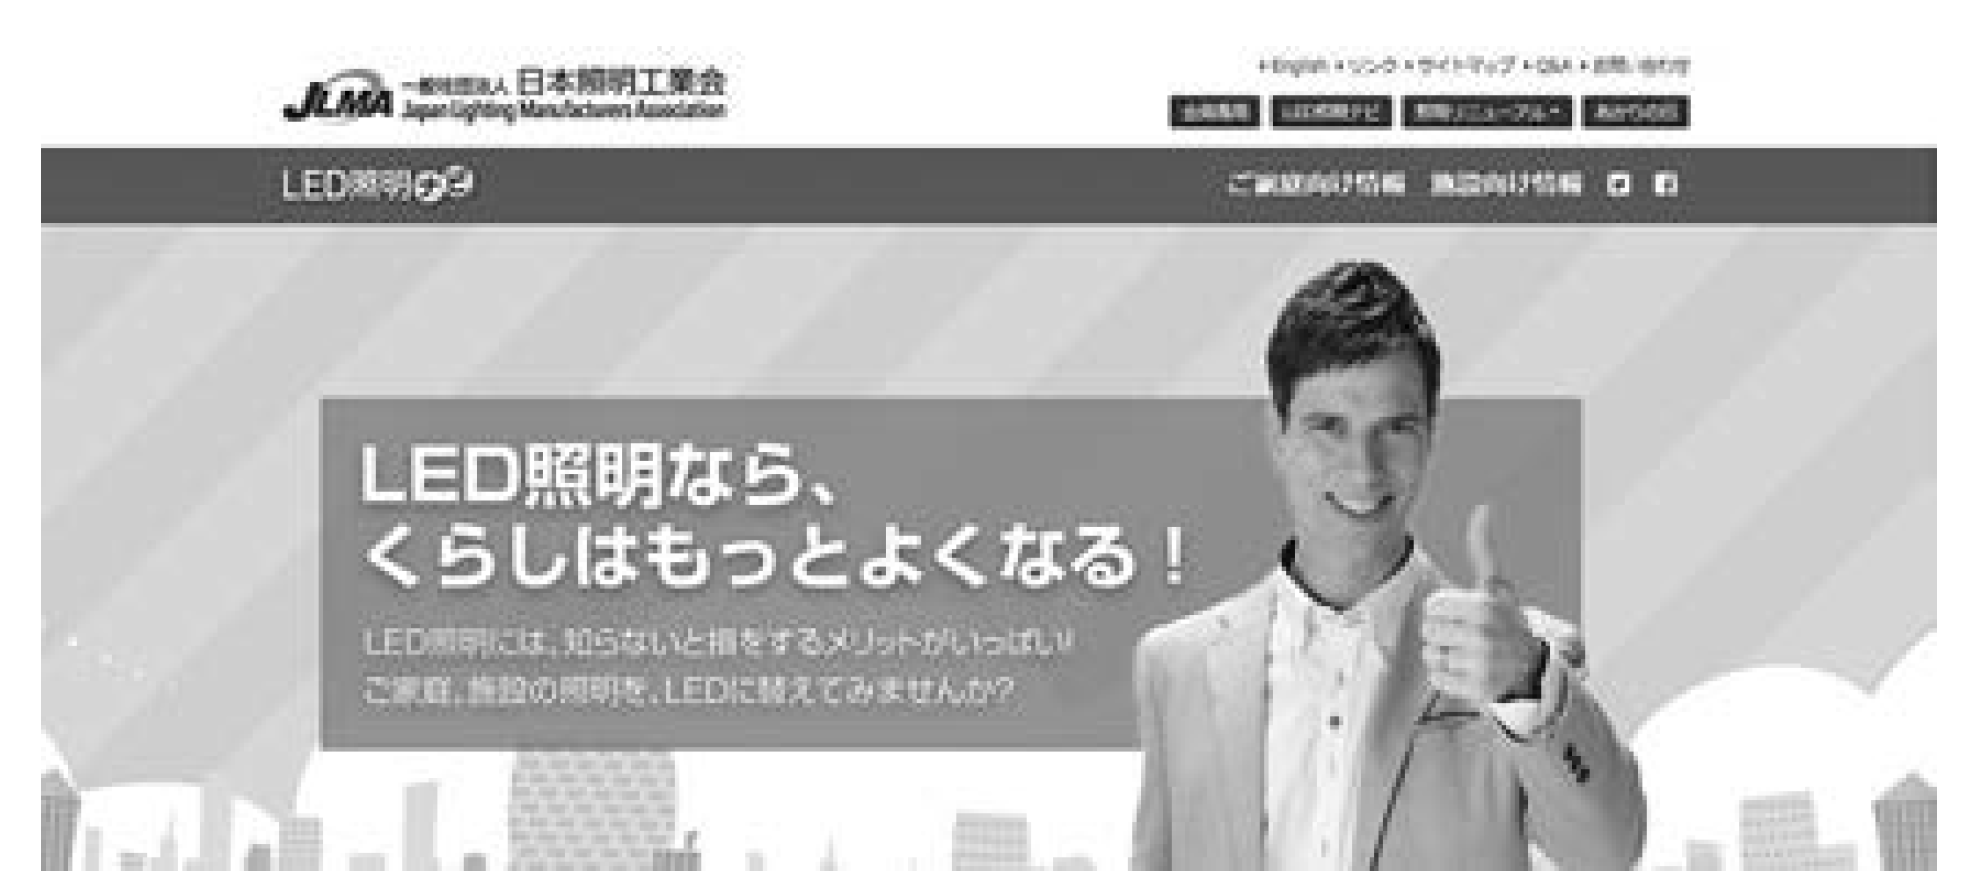 日本照明工業会 公式ＳＮＳ サイト開設 「あかりの日」など 多彩な情報を発信の画像